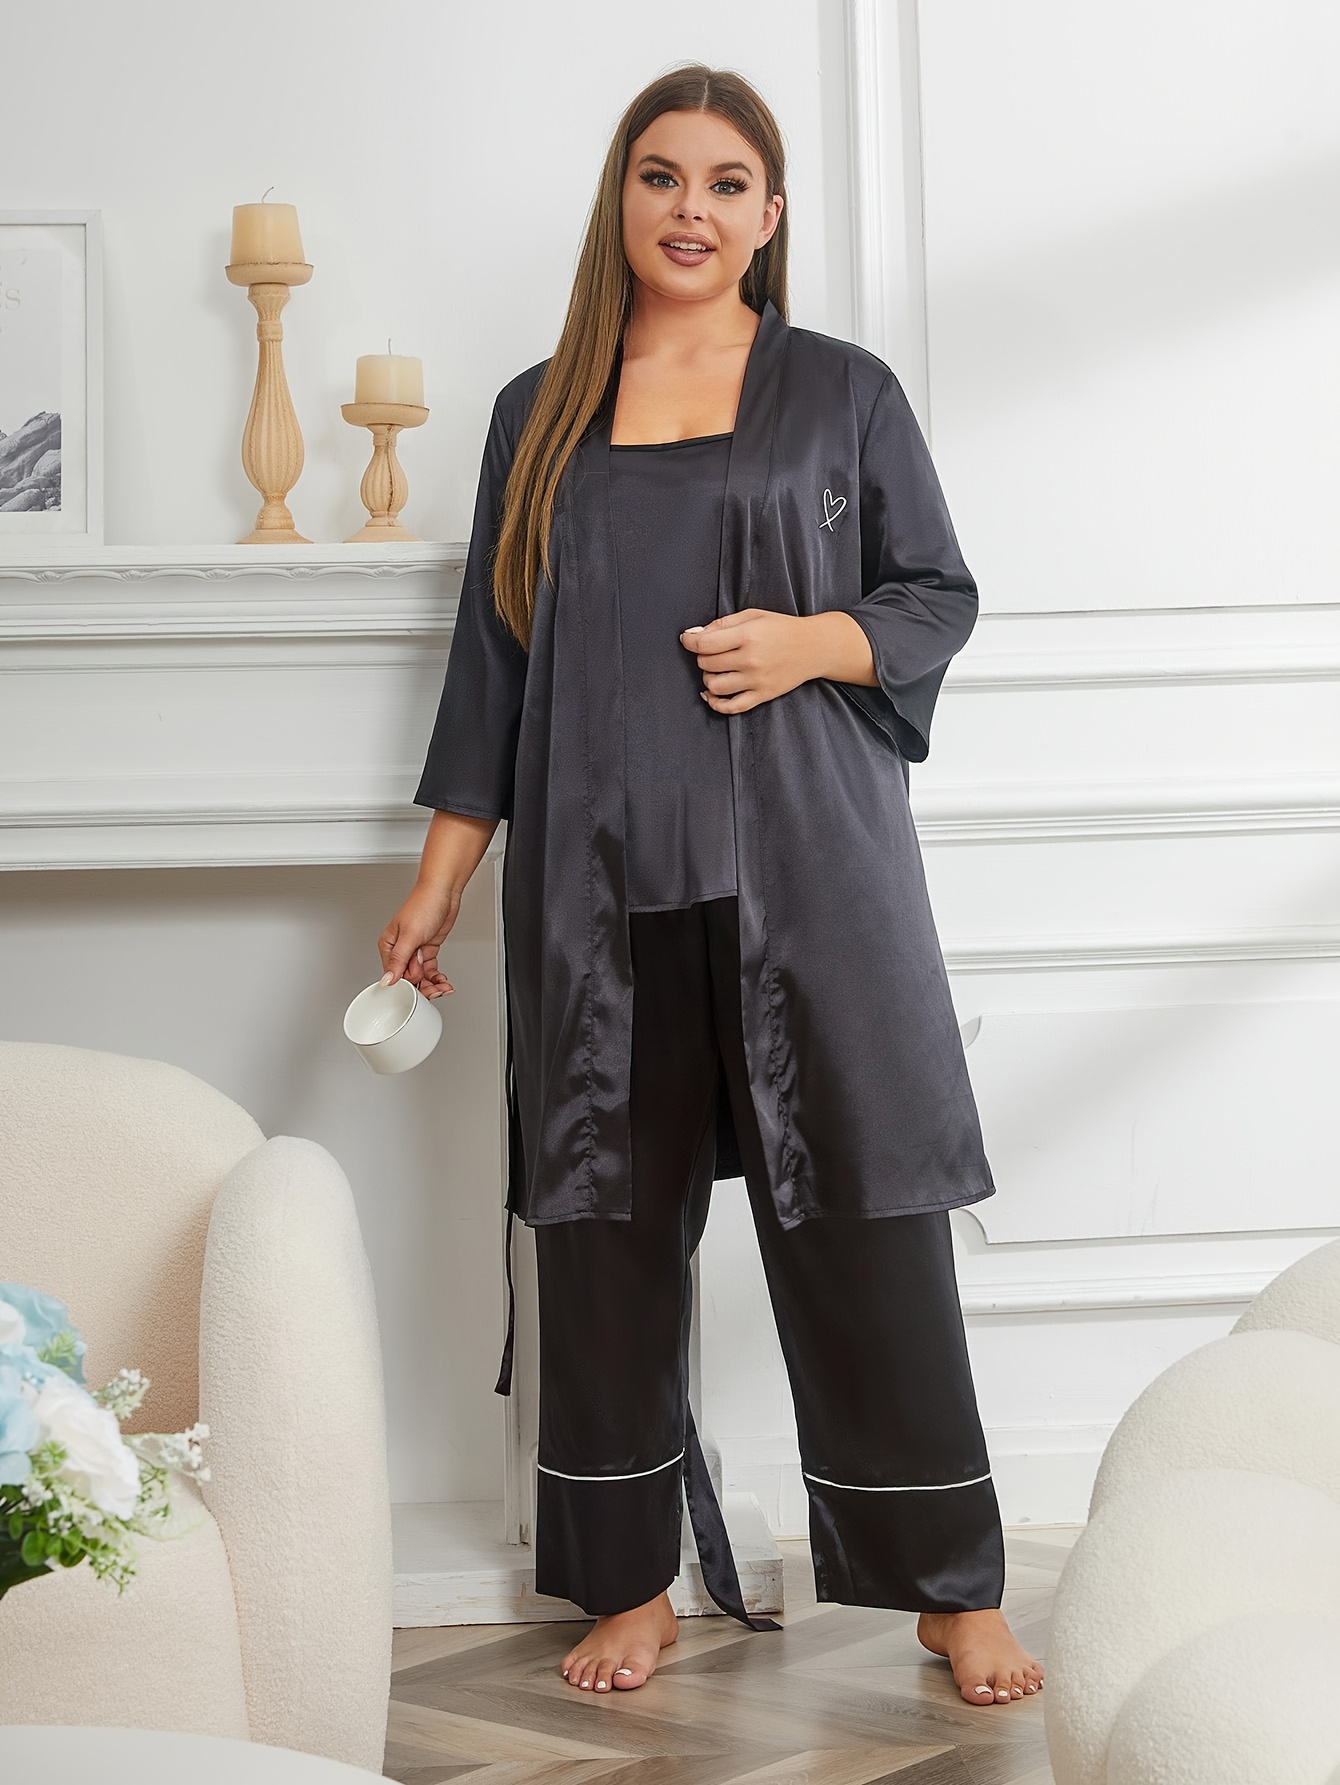 Plus Size Elegant Pajama Set, Women's Plus Silk Satin Floral Print Contrast  Lace Trim Long Sleeve Button Up Shirt & Pants Lounge Two Piece Set